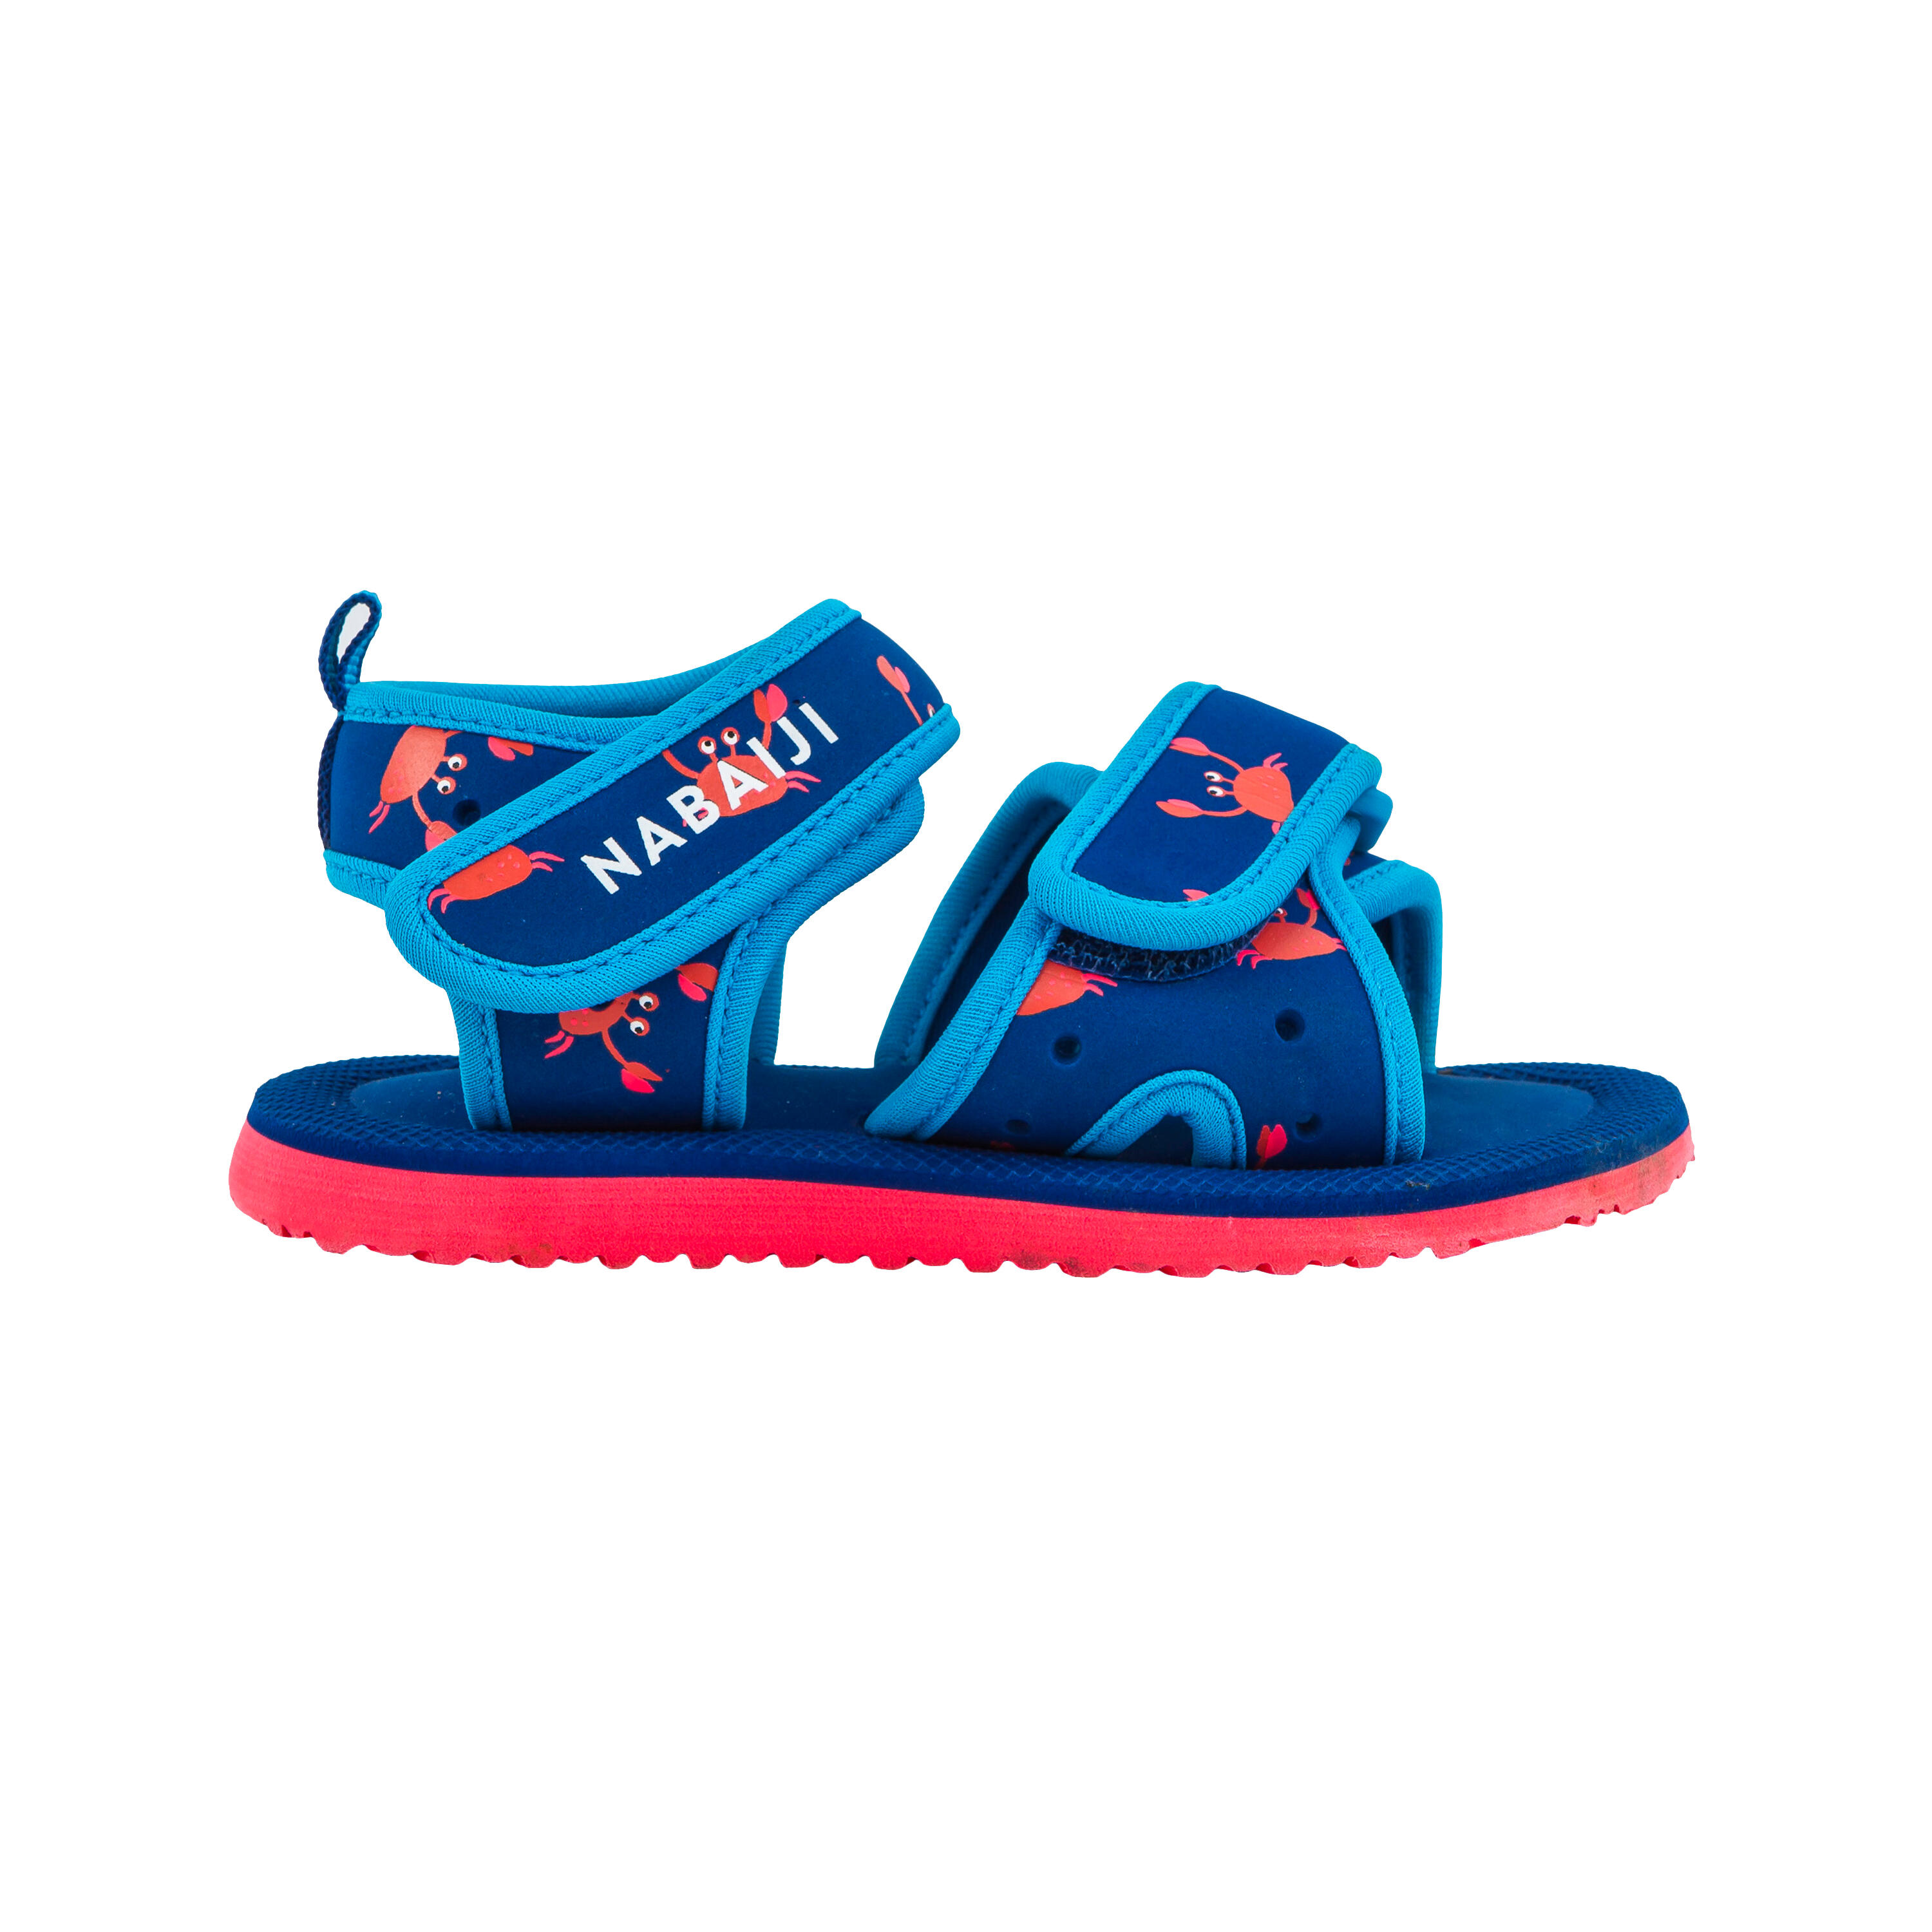 Babies' Swimming Pool Sandals - Blue - NABAIJI